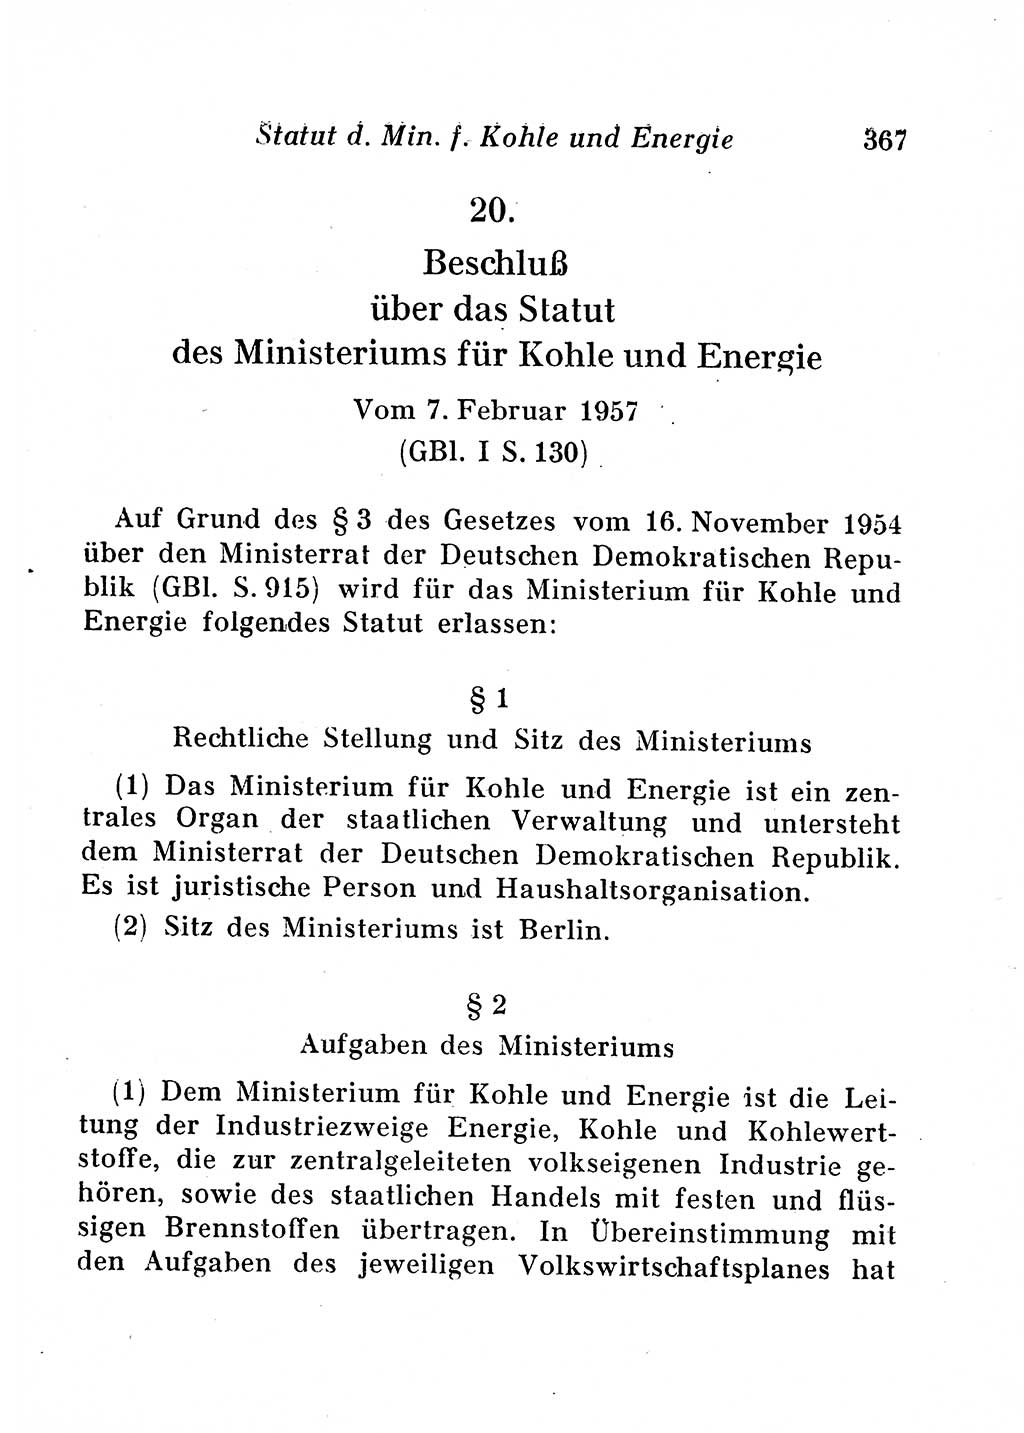 Staats- und verwaltungsrechtliche Gesetze der Deutschen Demokratischen Republik (DDR) 1958, Seite 367 (StVerwR Ges. DDR 1958, S. 367)